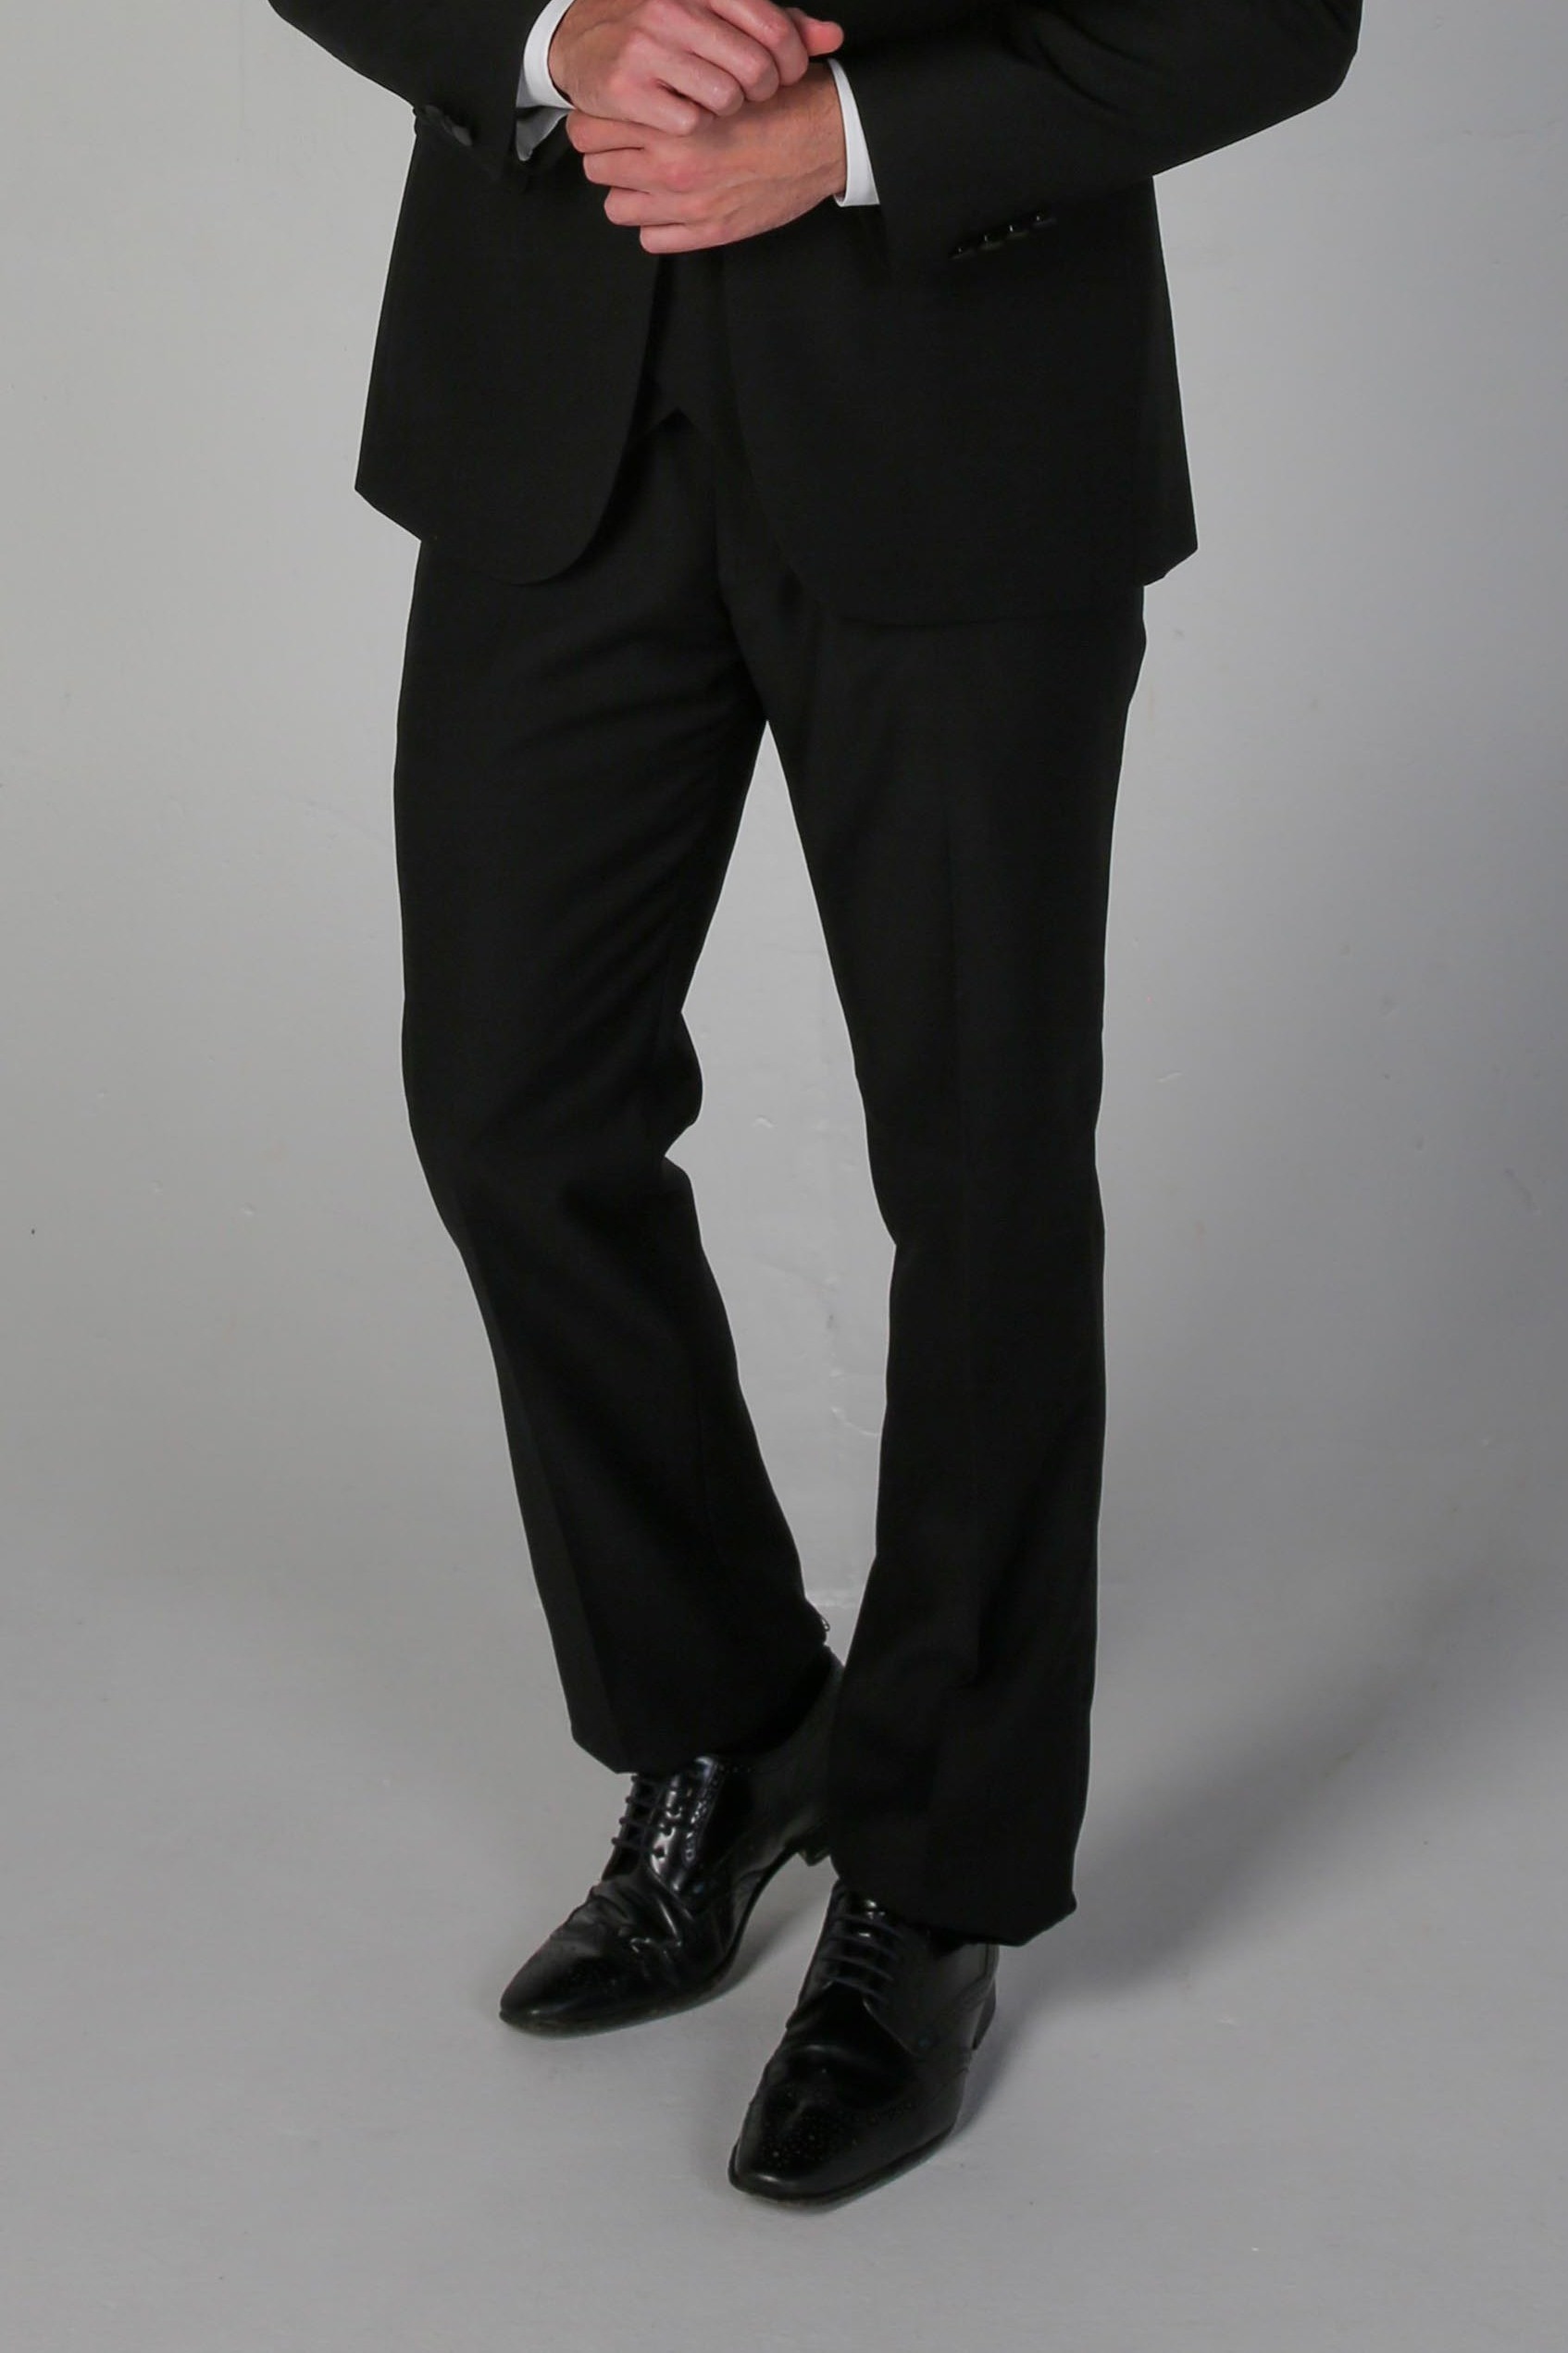 Men's Black Tuxedo Dinner Suit Trousers - FORD